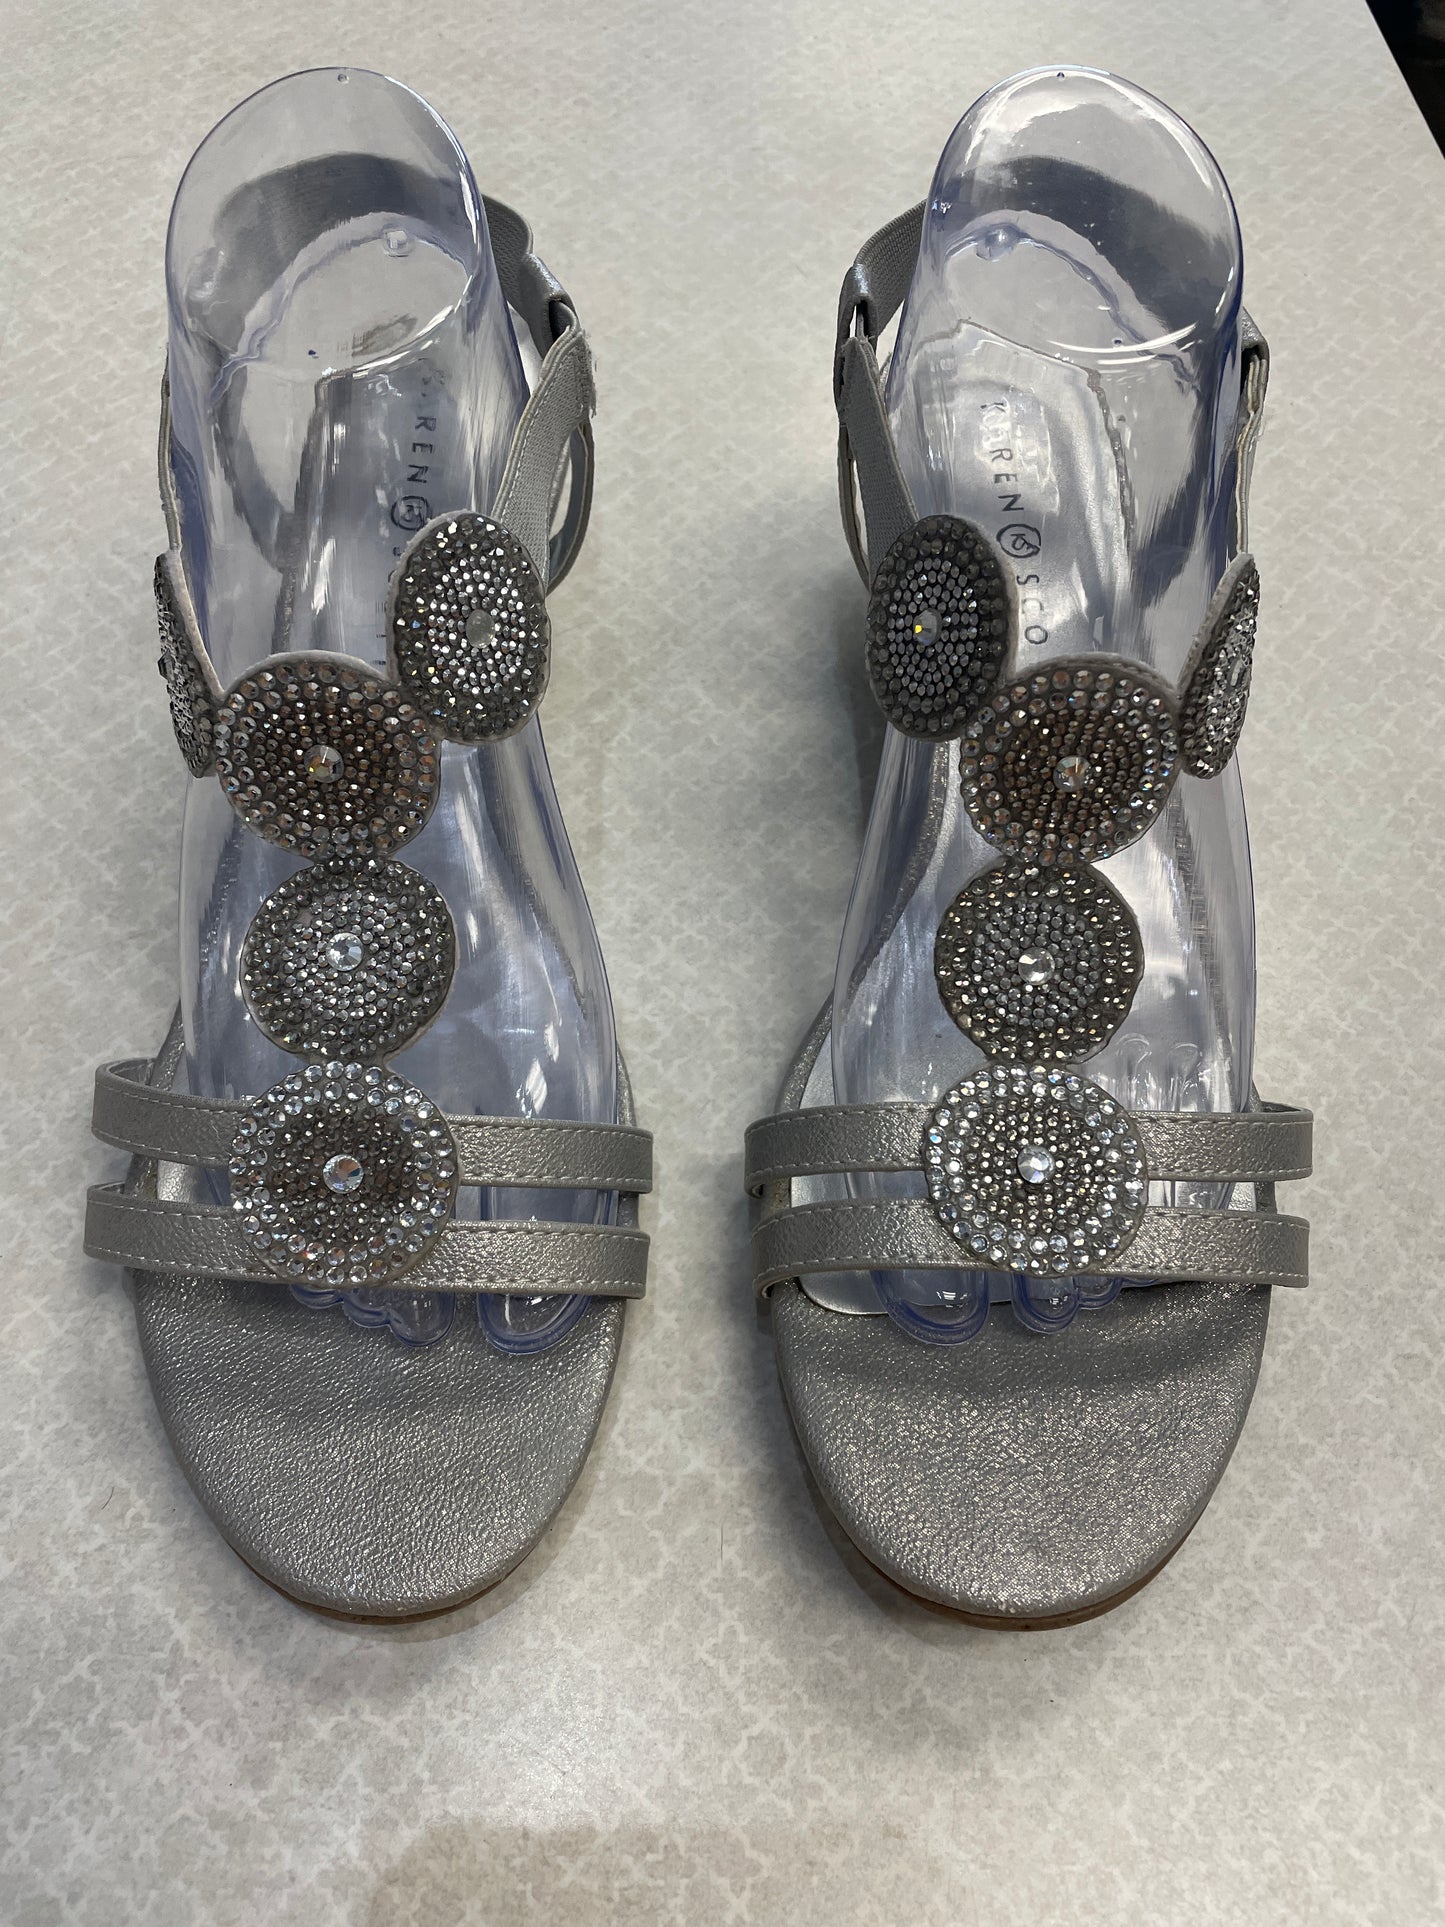 Sandals Heels Wedge By Karen Scott  Size: 11